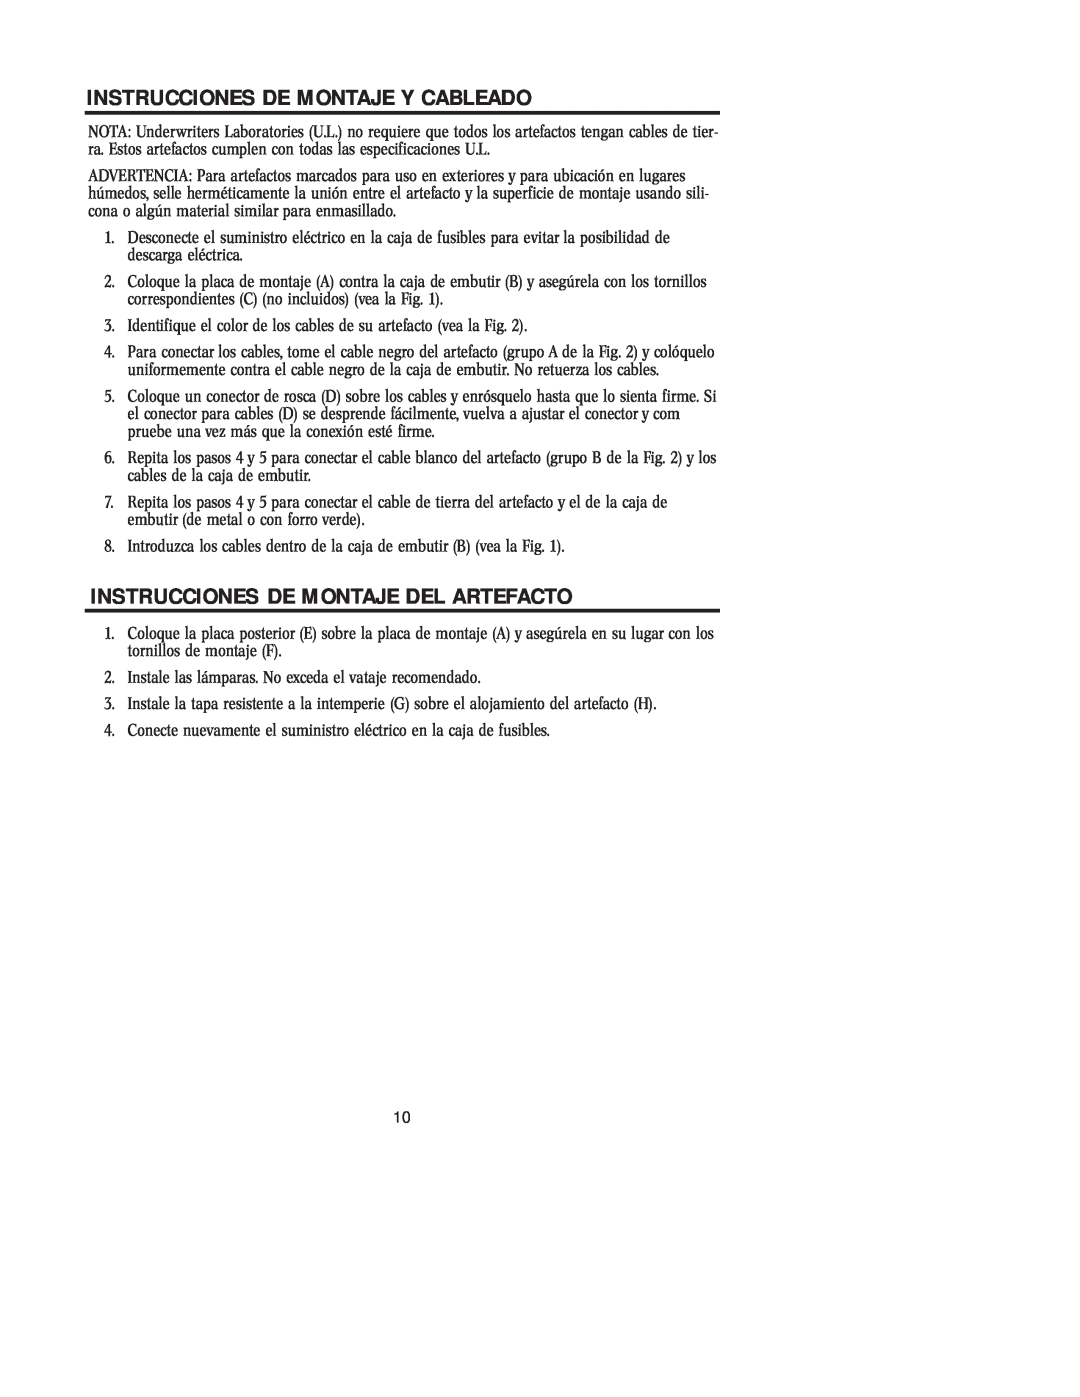 Westinghouse 121504 owner manual Instrucciones De Montaje Y Cableado, Instrucciones De Montaje Del Artefacto 